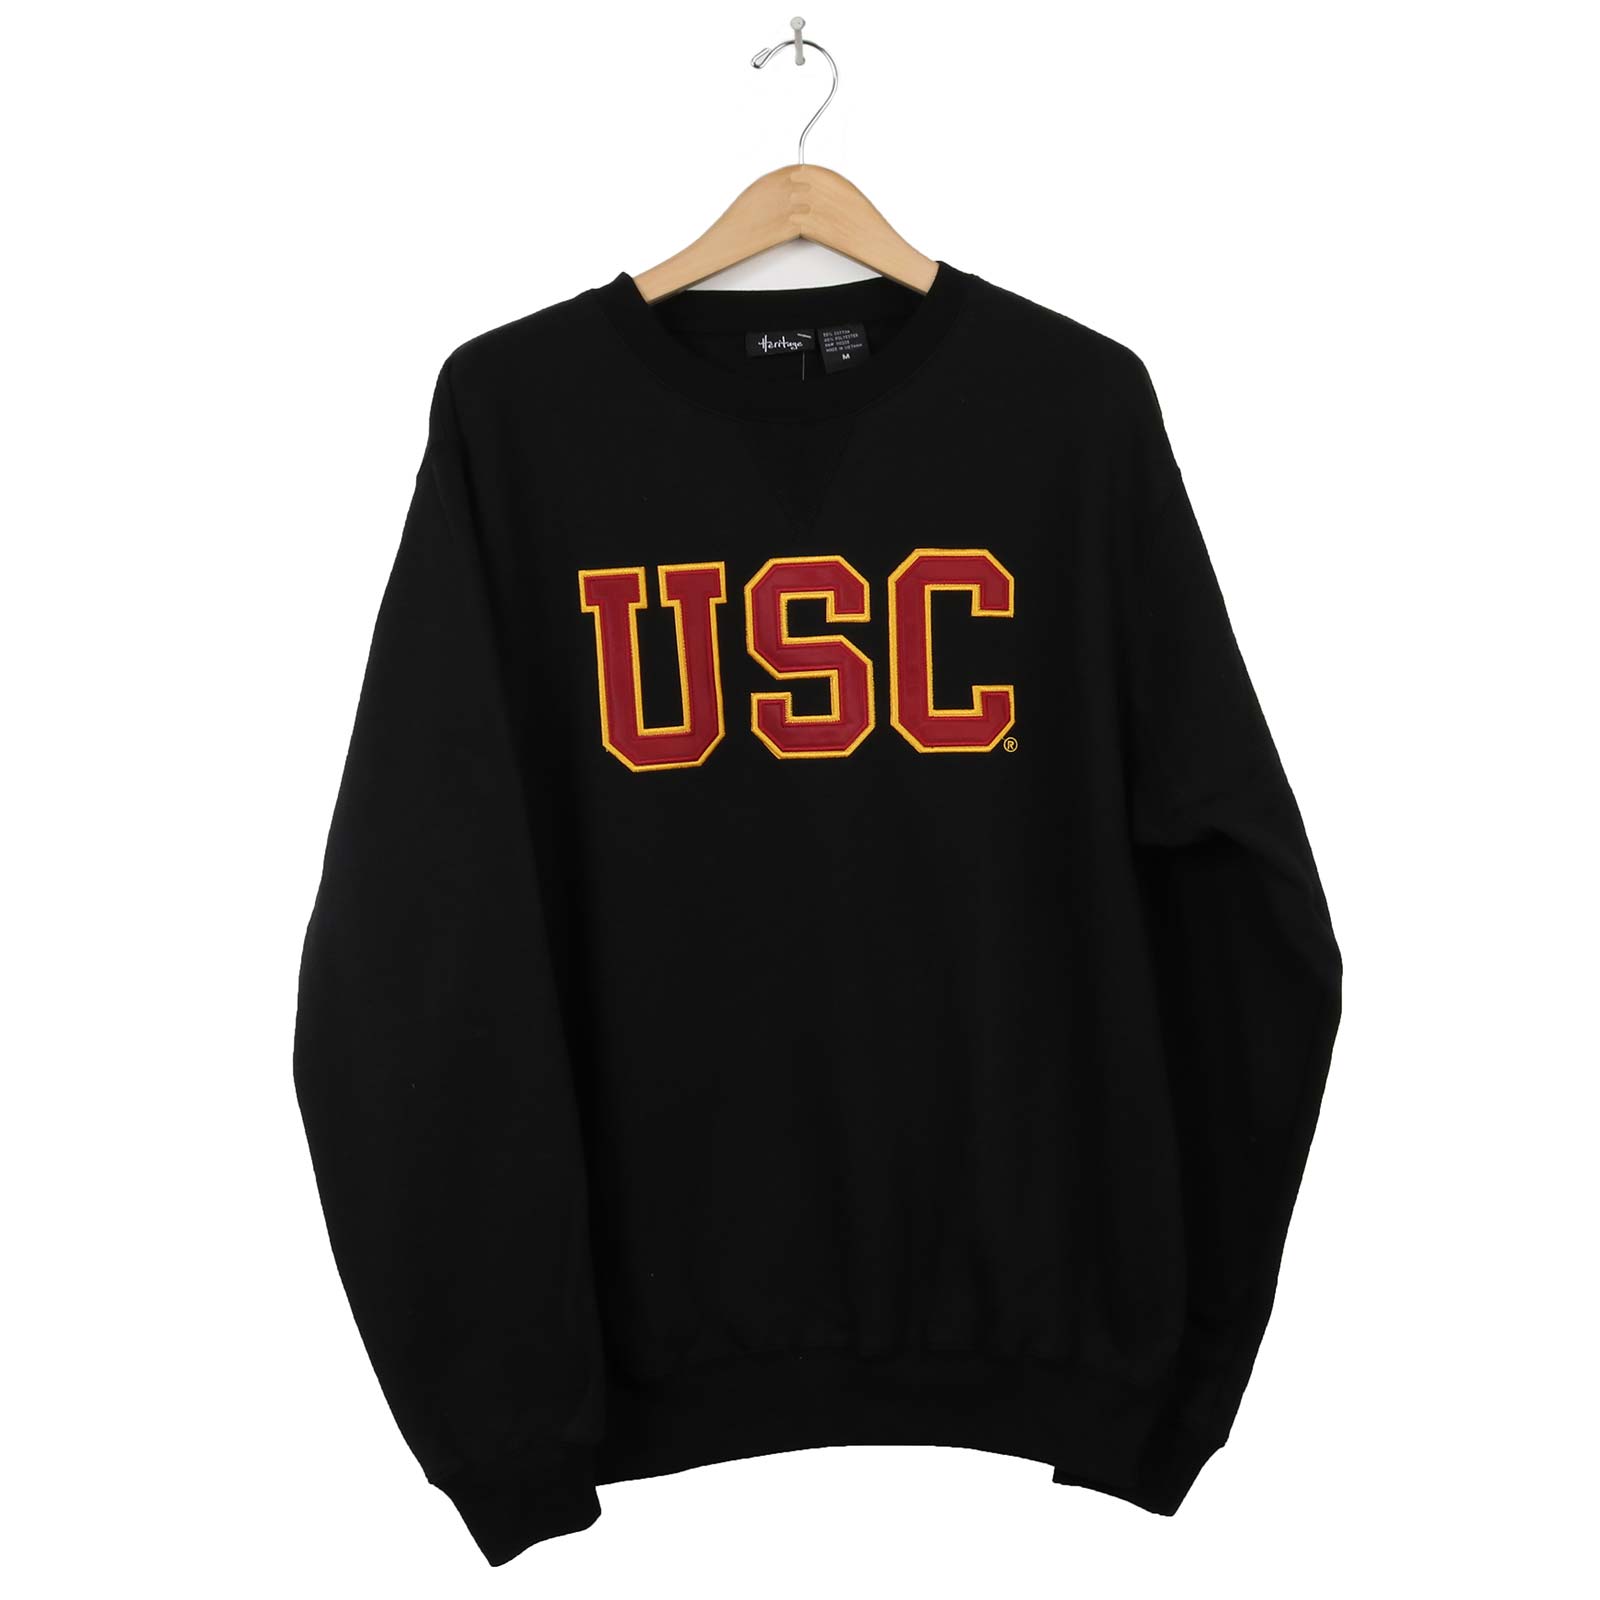 Official USC Trojans Women's Hoodies & Sweatshirts, USC Women's Sweater